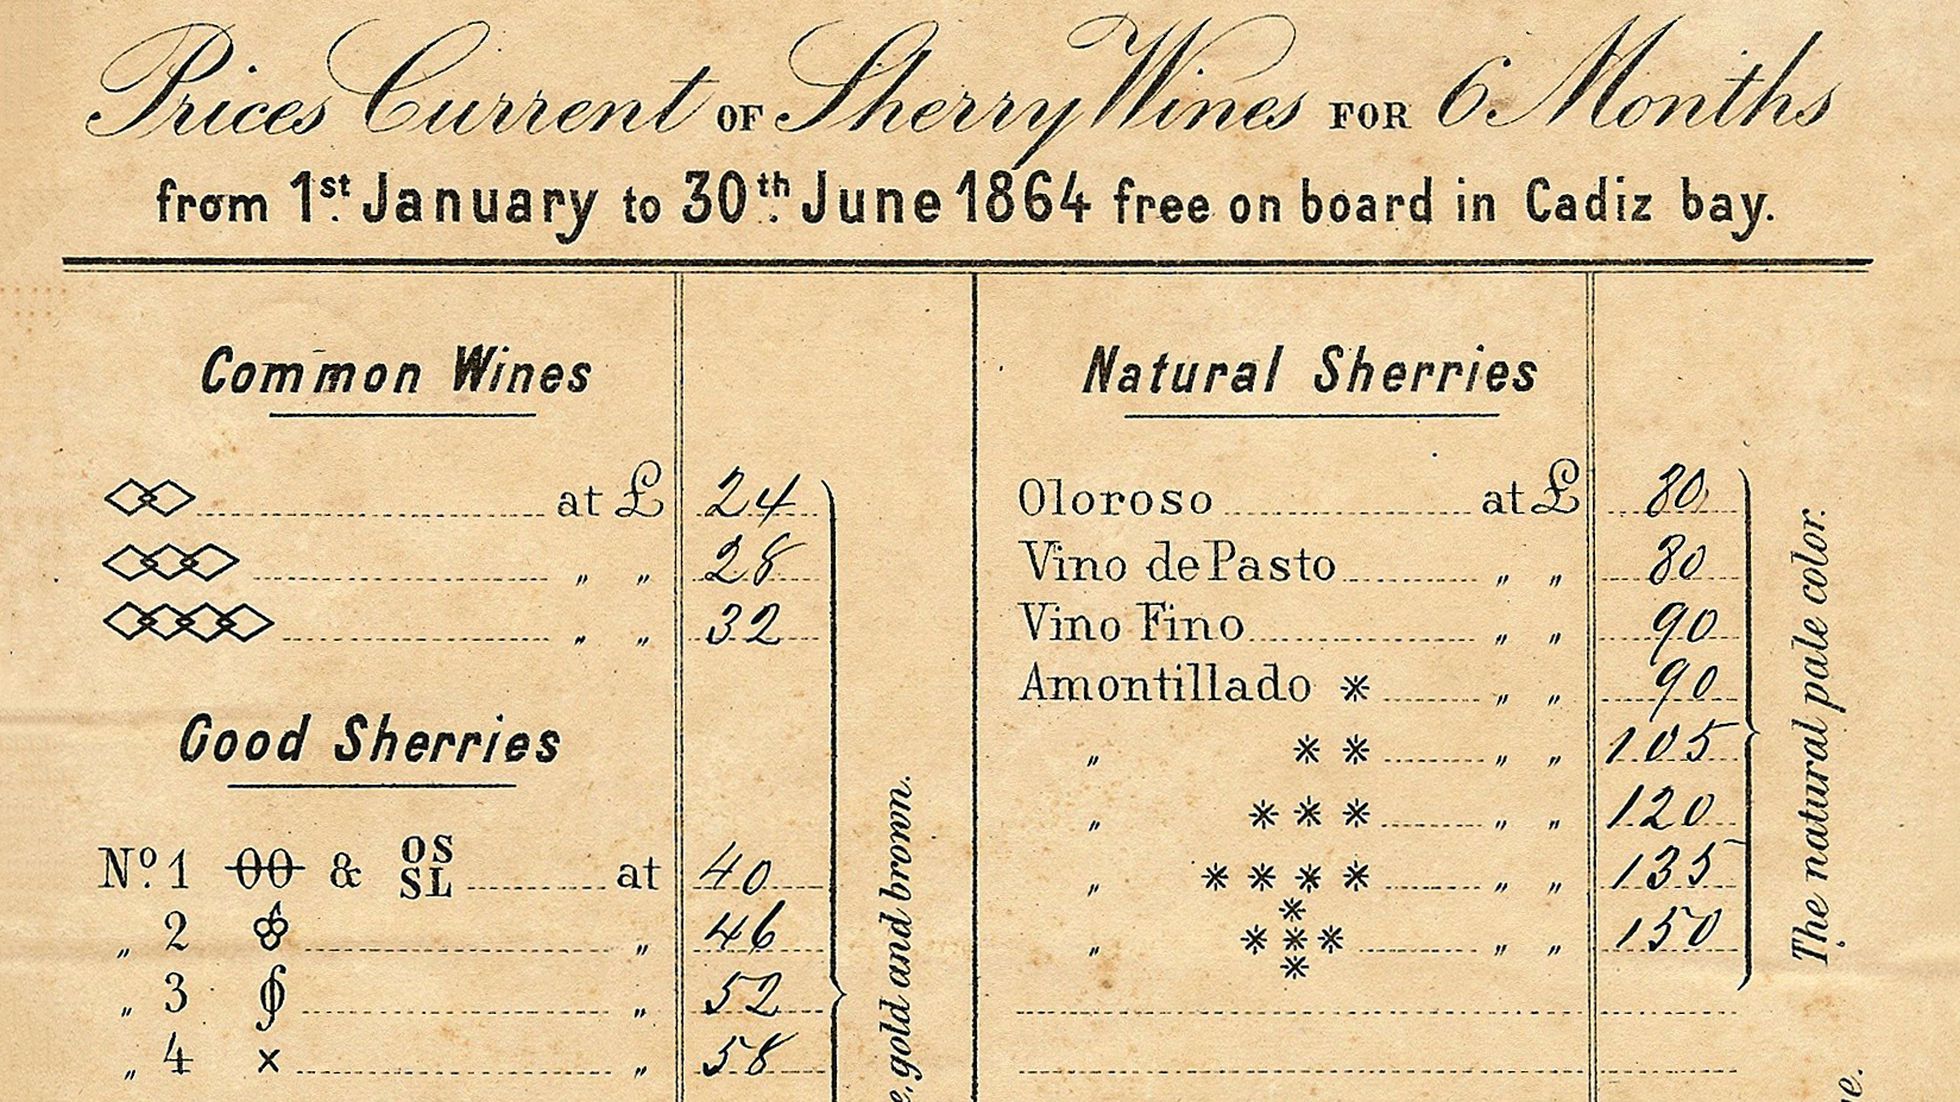 Sherry wine price list from 1864 - Gonzalez Byass